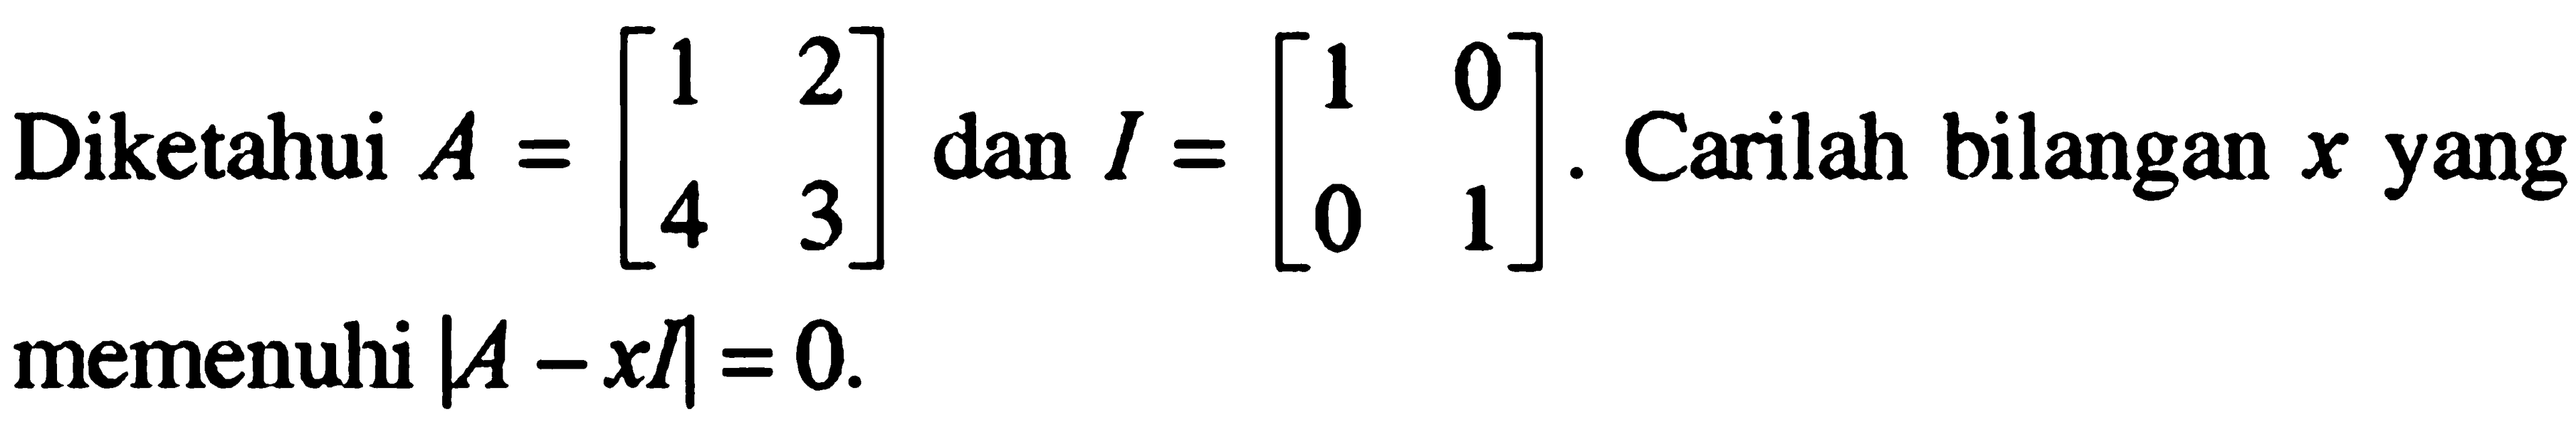 Diketahui A = [1 2 4 3] dan I = [1 0 0 1]. Carilah bilangan x yang memenuhi |A-x|=0.